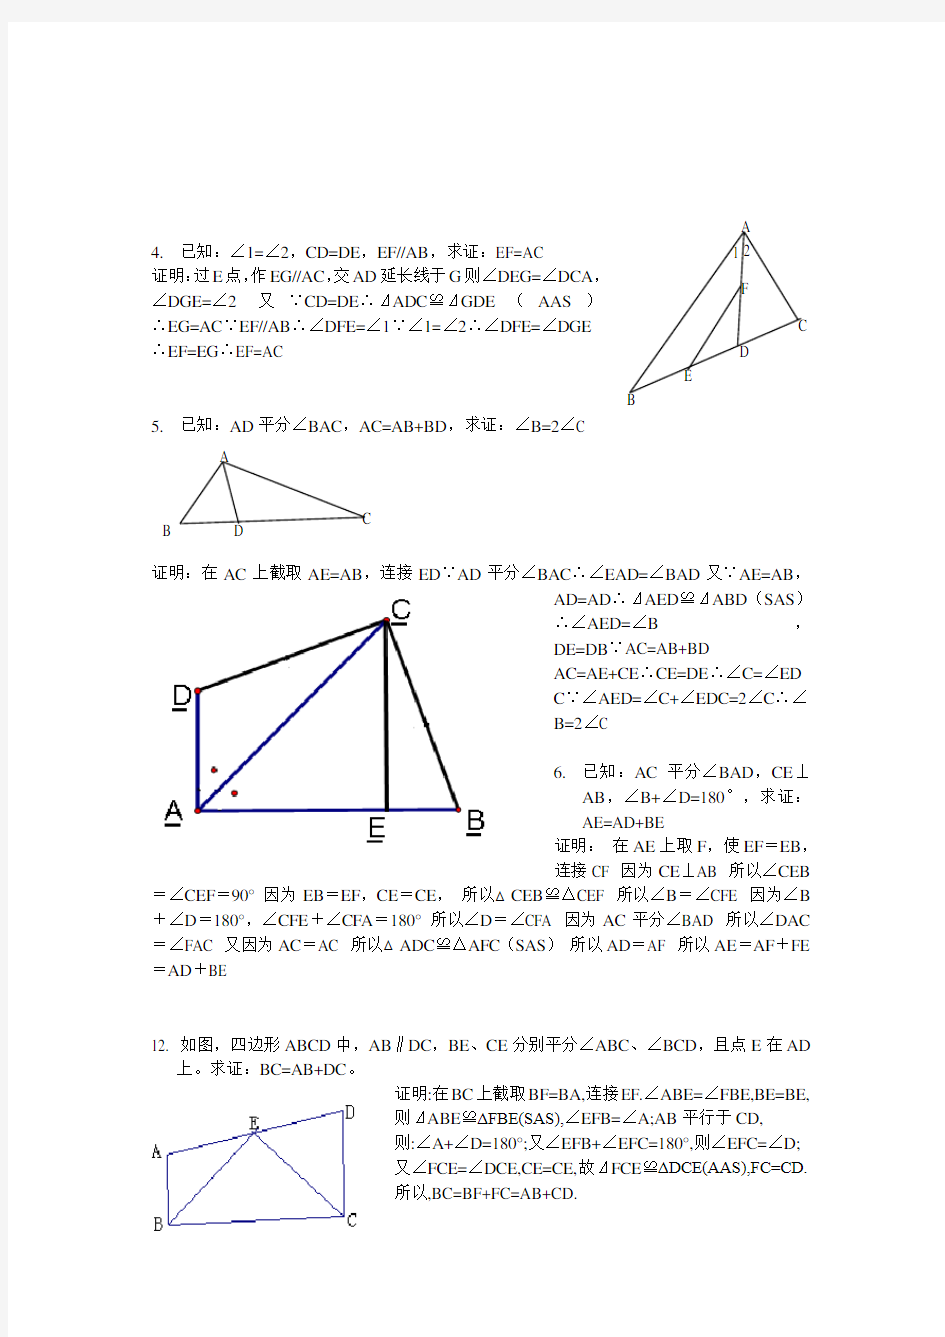 全等三角形经典题型50题(含答案)